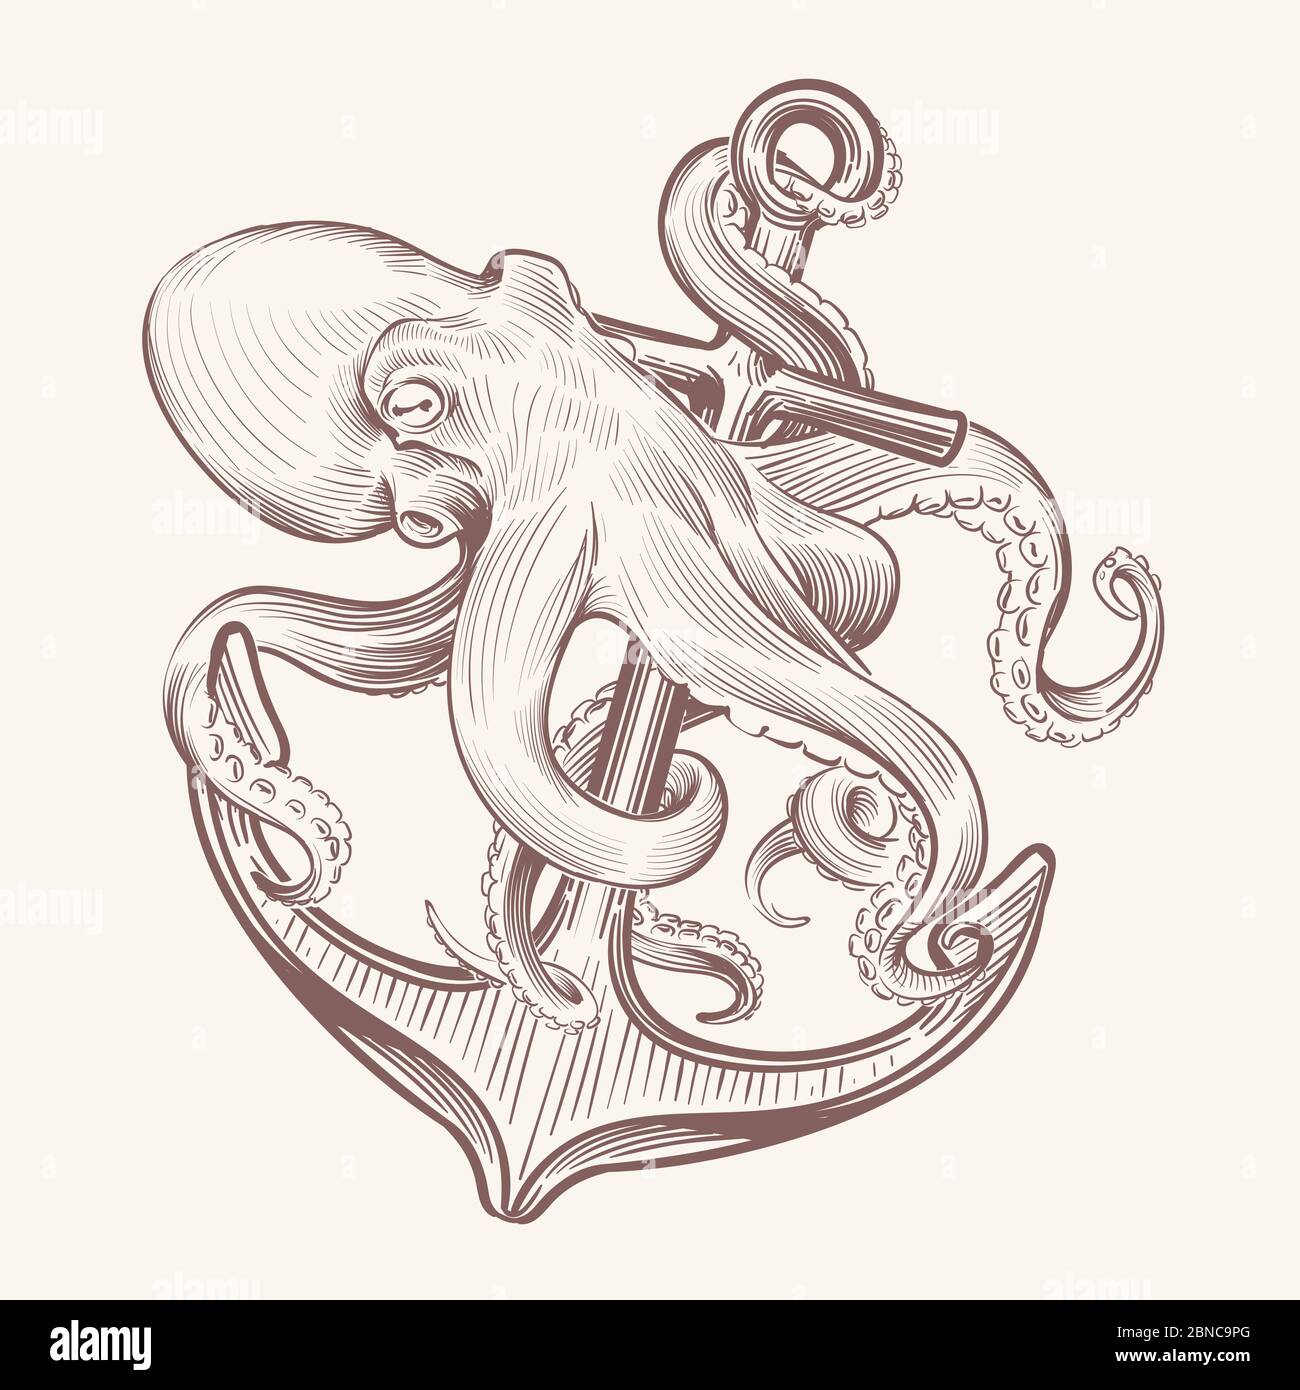 Poulpe avec ancrage. Esquisse mer kraken cald tenant l'ancre de navire. Motif vintage tatouage marine octopus. Illustration de poulpe et d'ancre, animal mythique et crochet Illustration de Vecteur